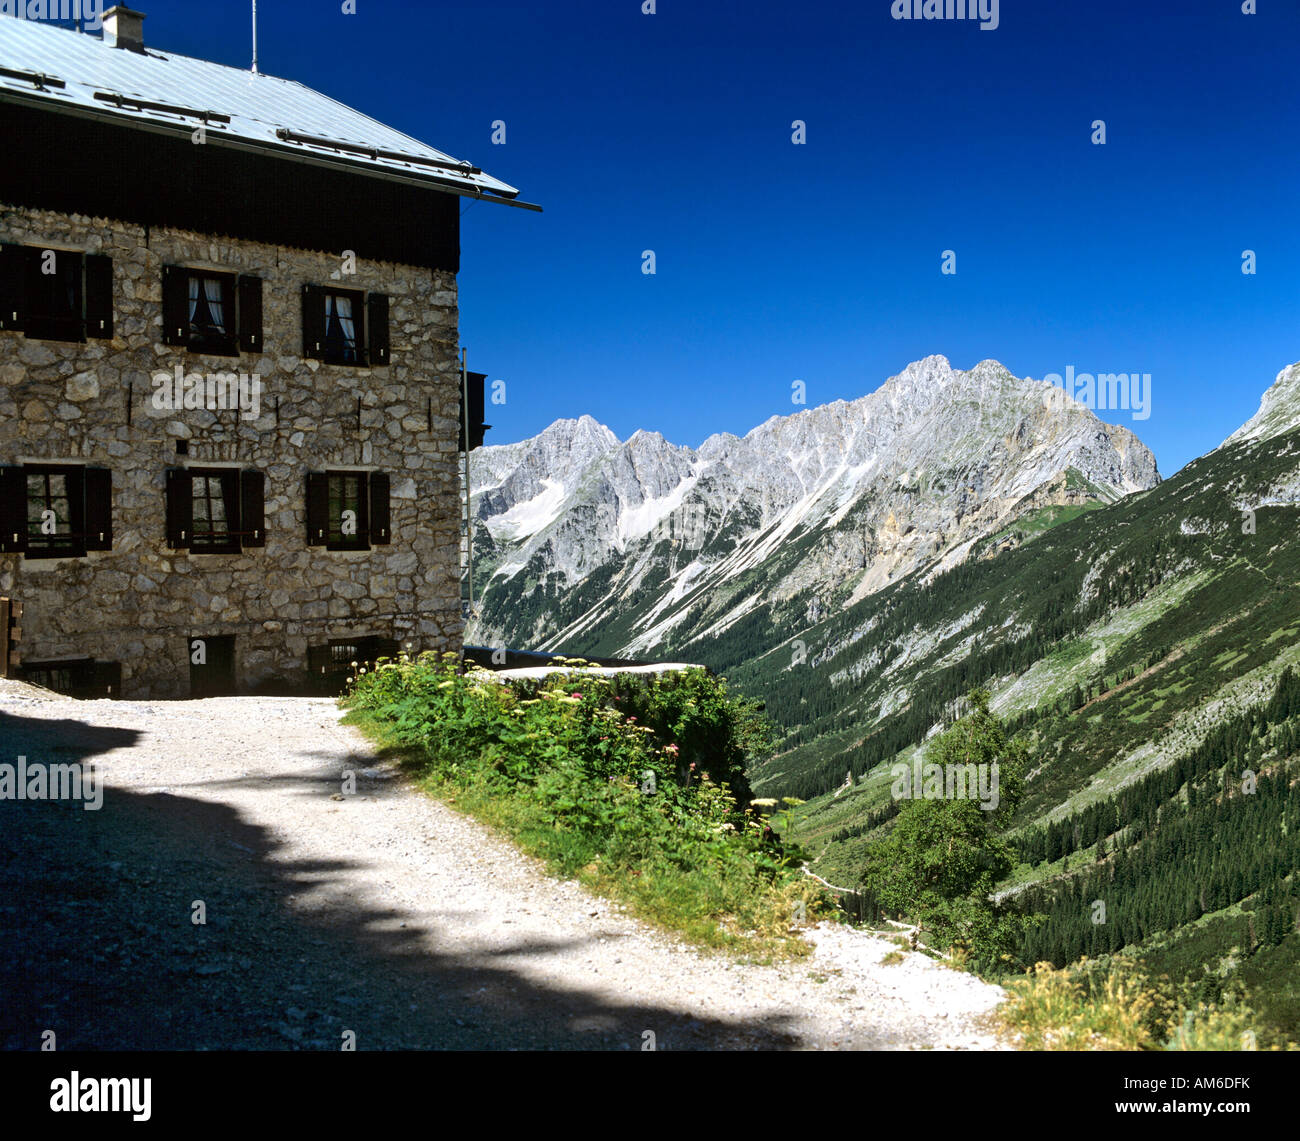 Karwendelhaus, Karwendel, Tyrol, Austria Stock Photo